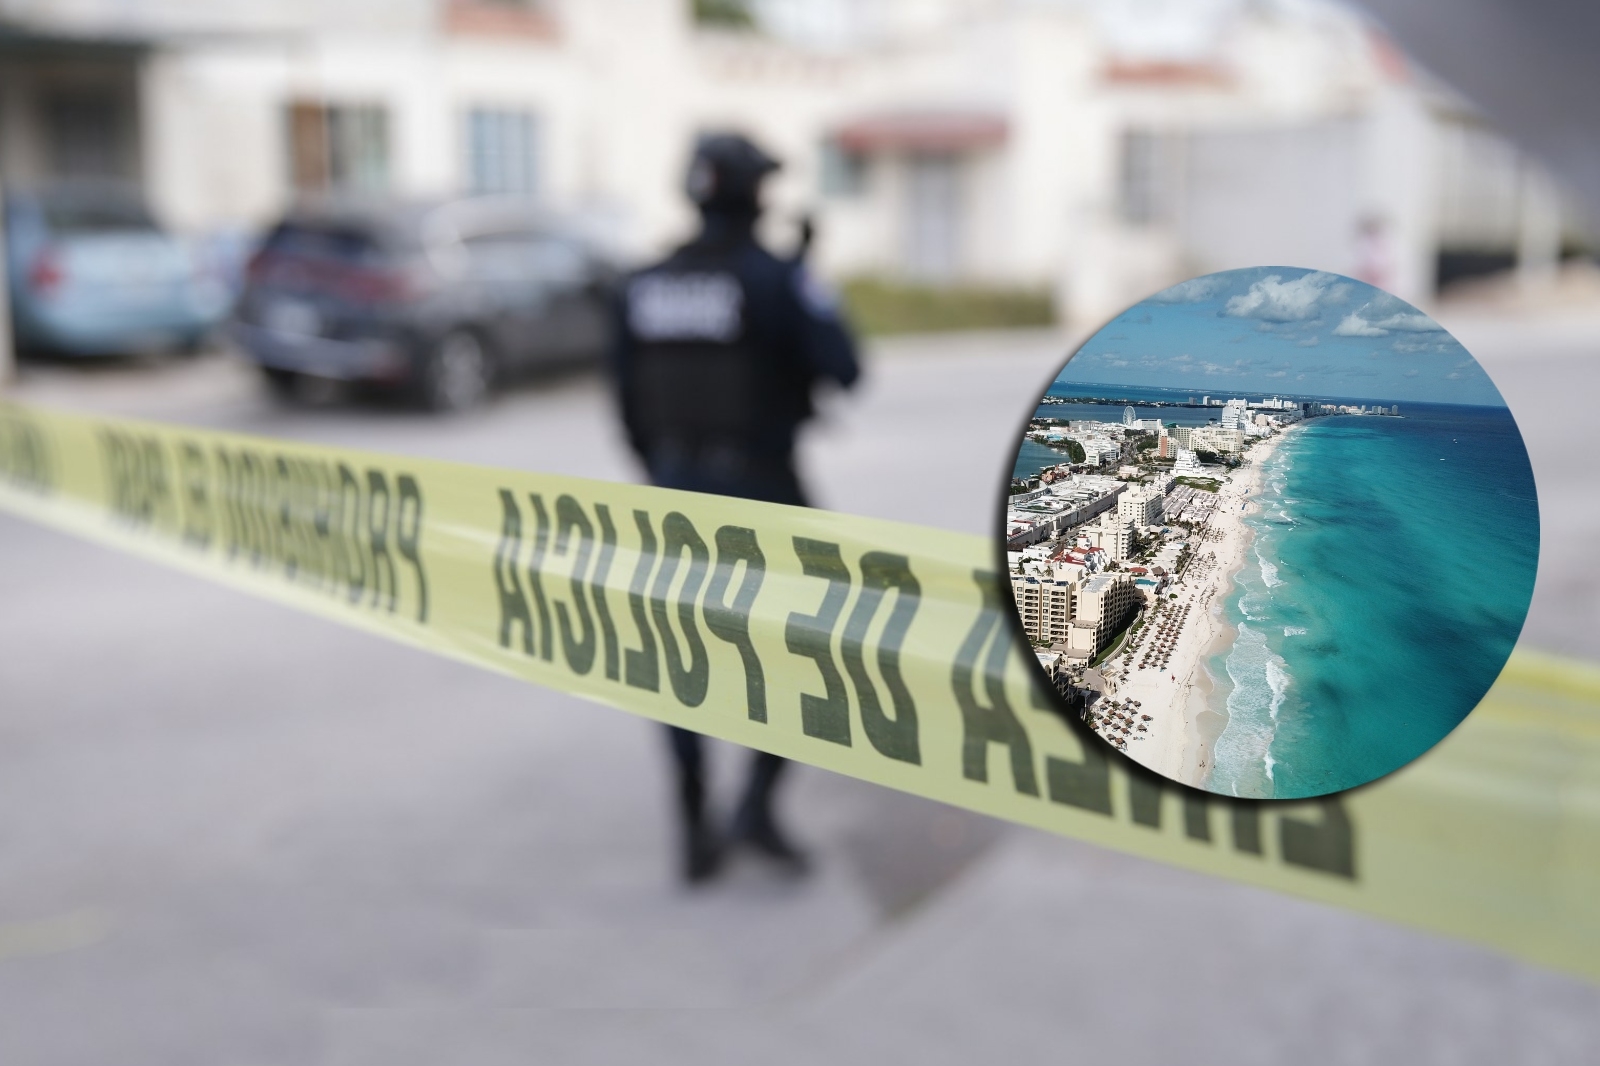 En los tres hechos de alto impacto ocurridos en Cancún, la Policía Quintana Roo, que no hubo detenidos tras operativos de localización de los responsables